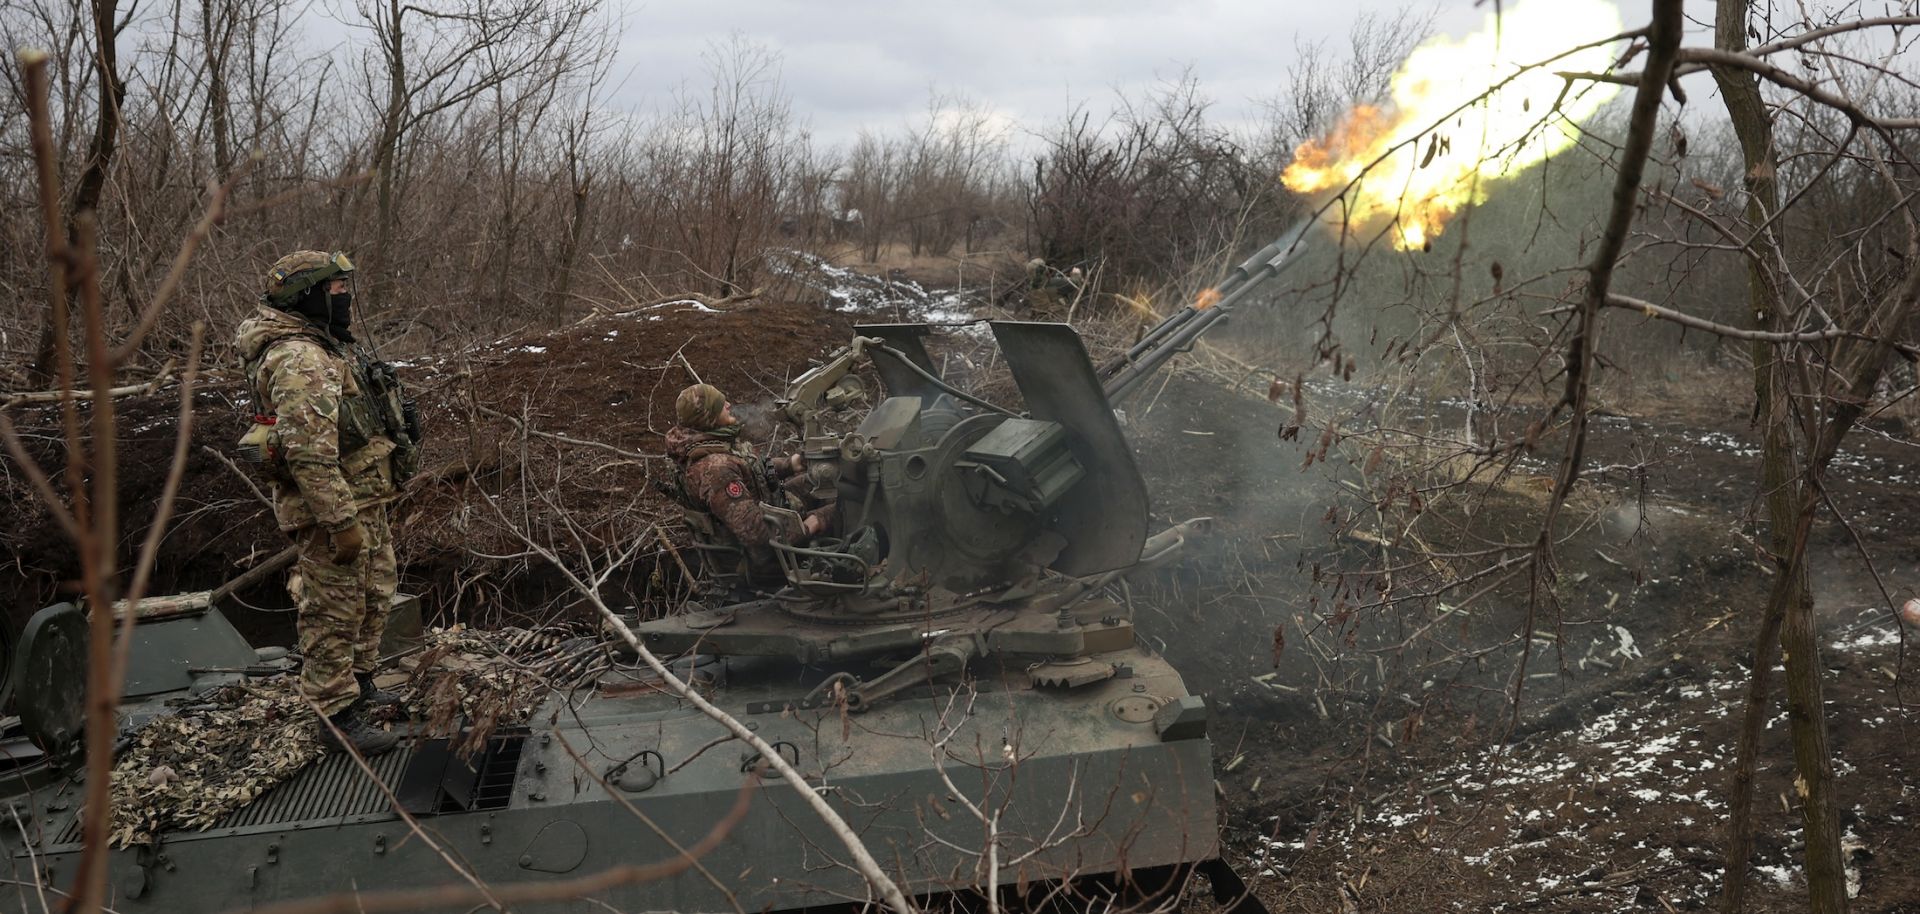 Βίντεο: Ρωσικό TOS βομβαρδίζει προπύργιο των Ουκρανικών Ενόπλων Δυνάμεων κοντά στη Novopokrovka